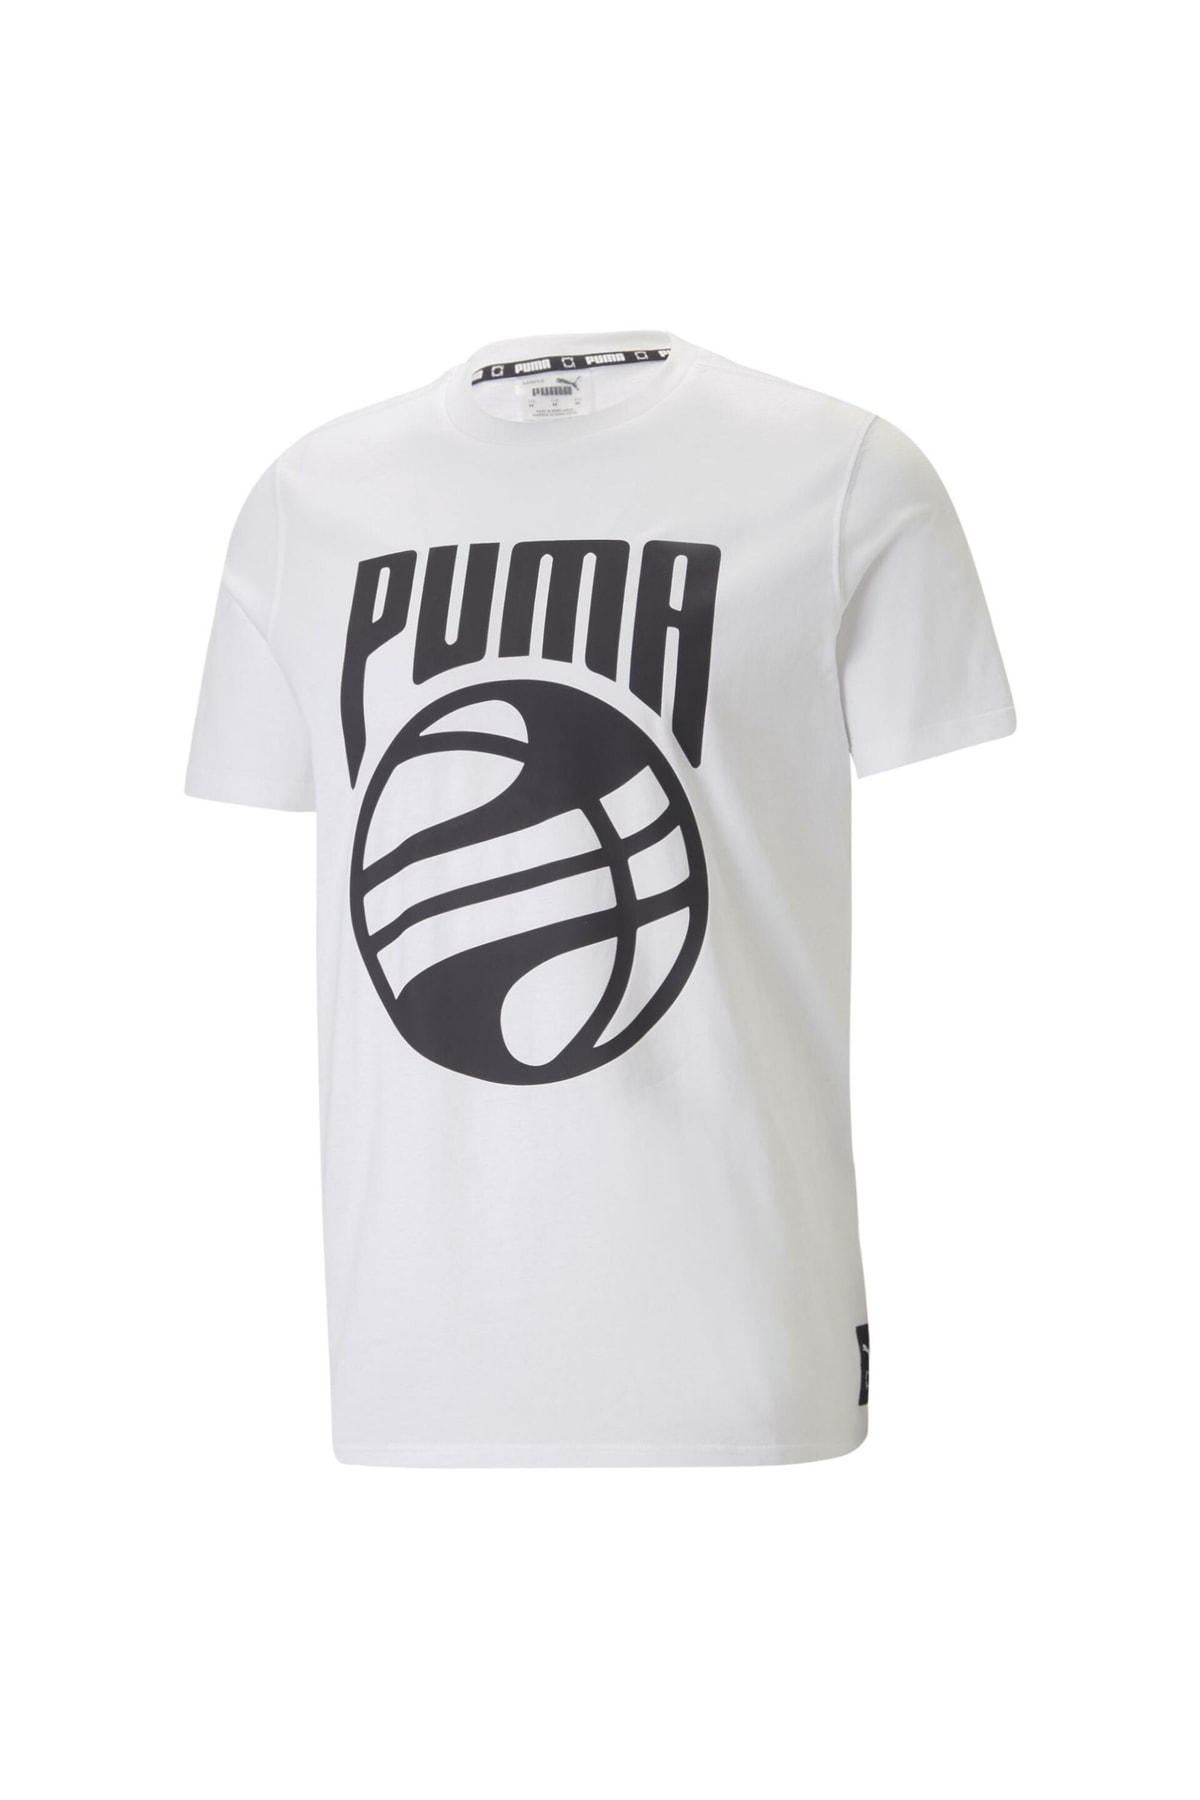 Puma Posterize Erkek Baskılı Tişört Beyaz 53859802